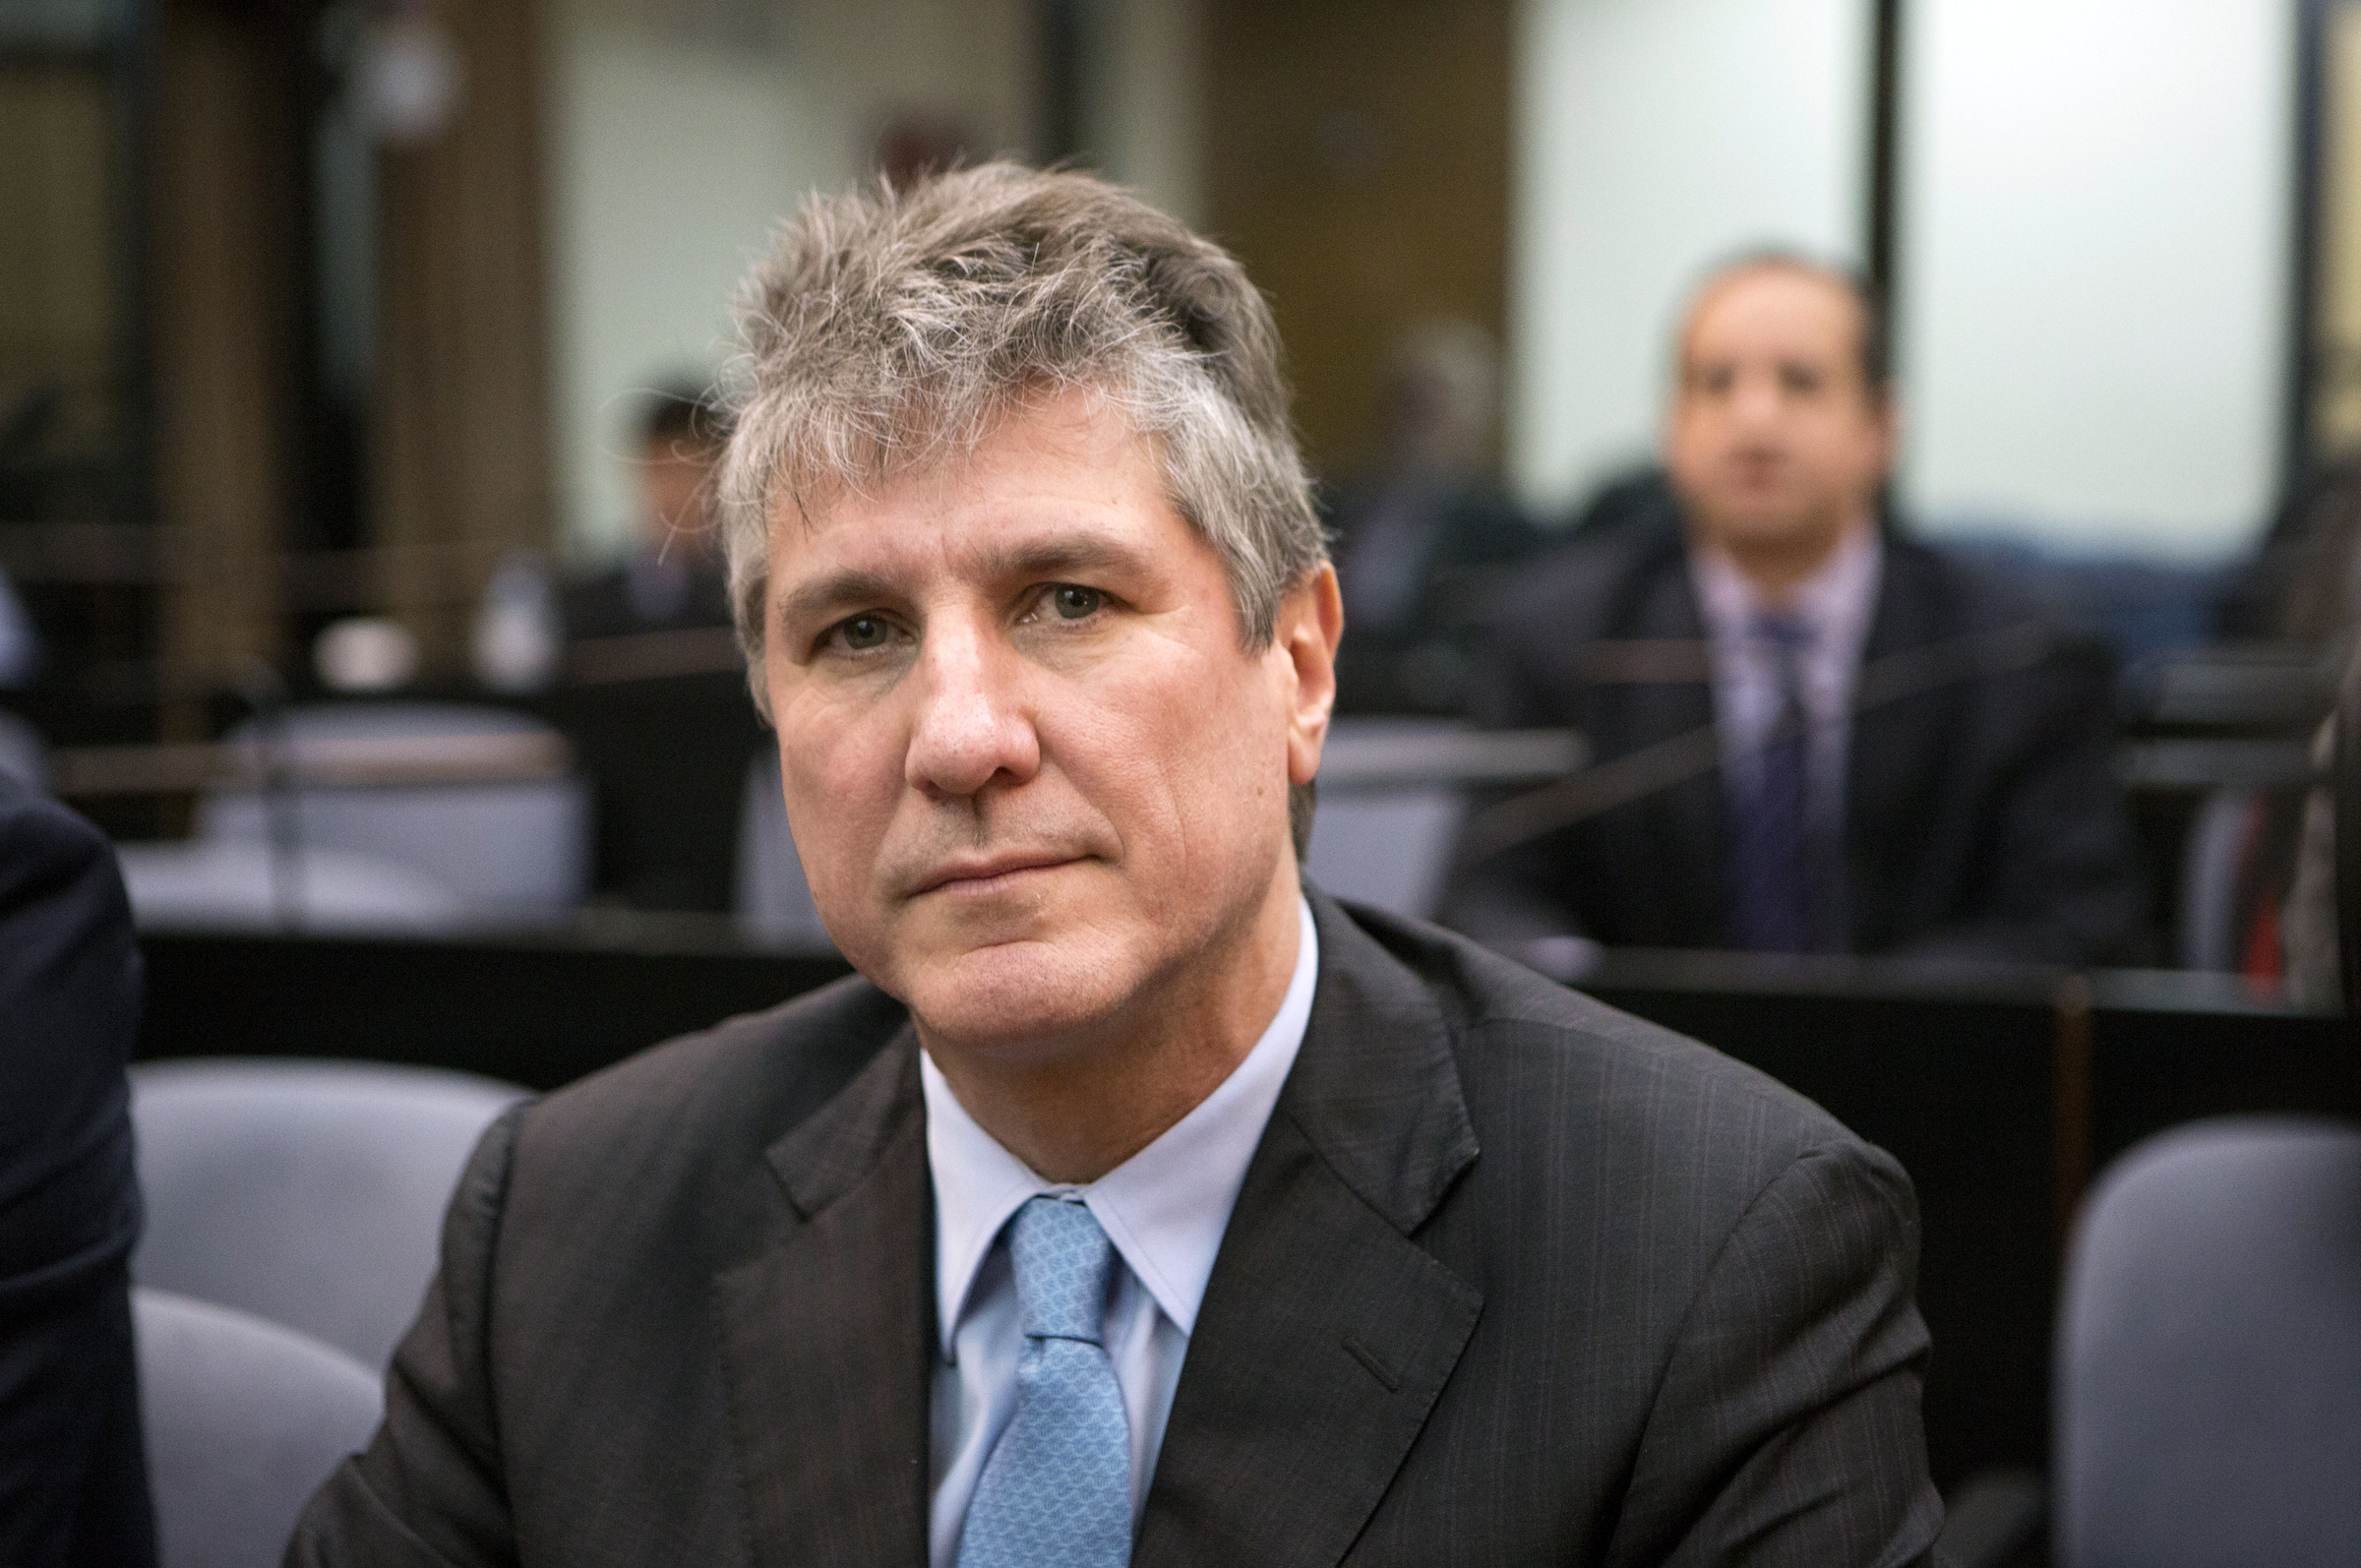 Condenan a prisión al ex vicepresidente argentino Amado Boudou por corrupción